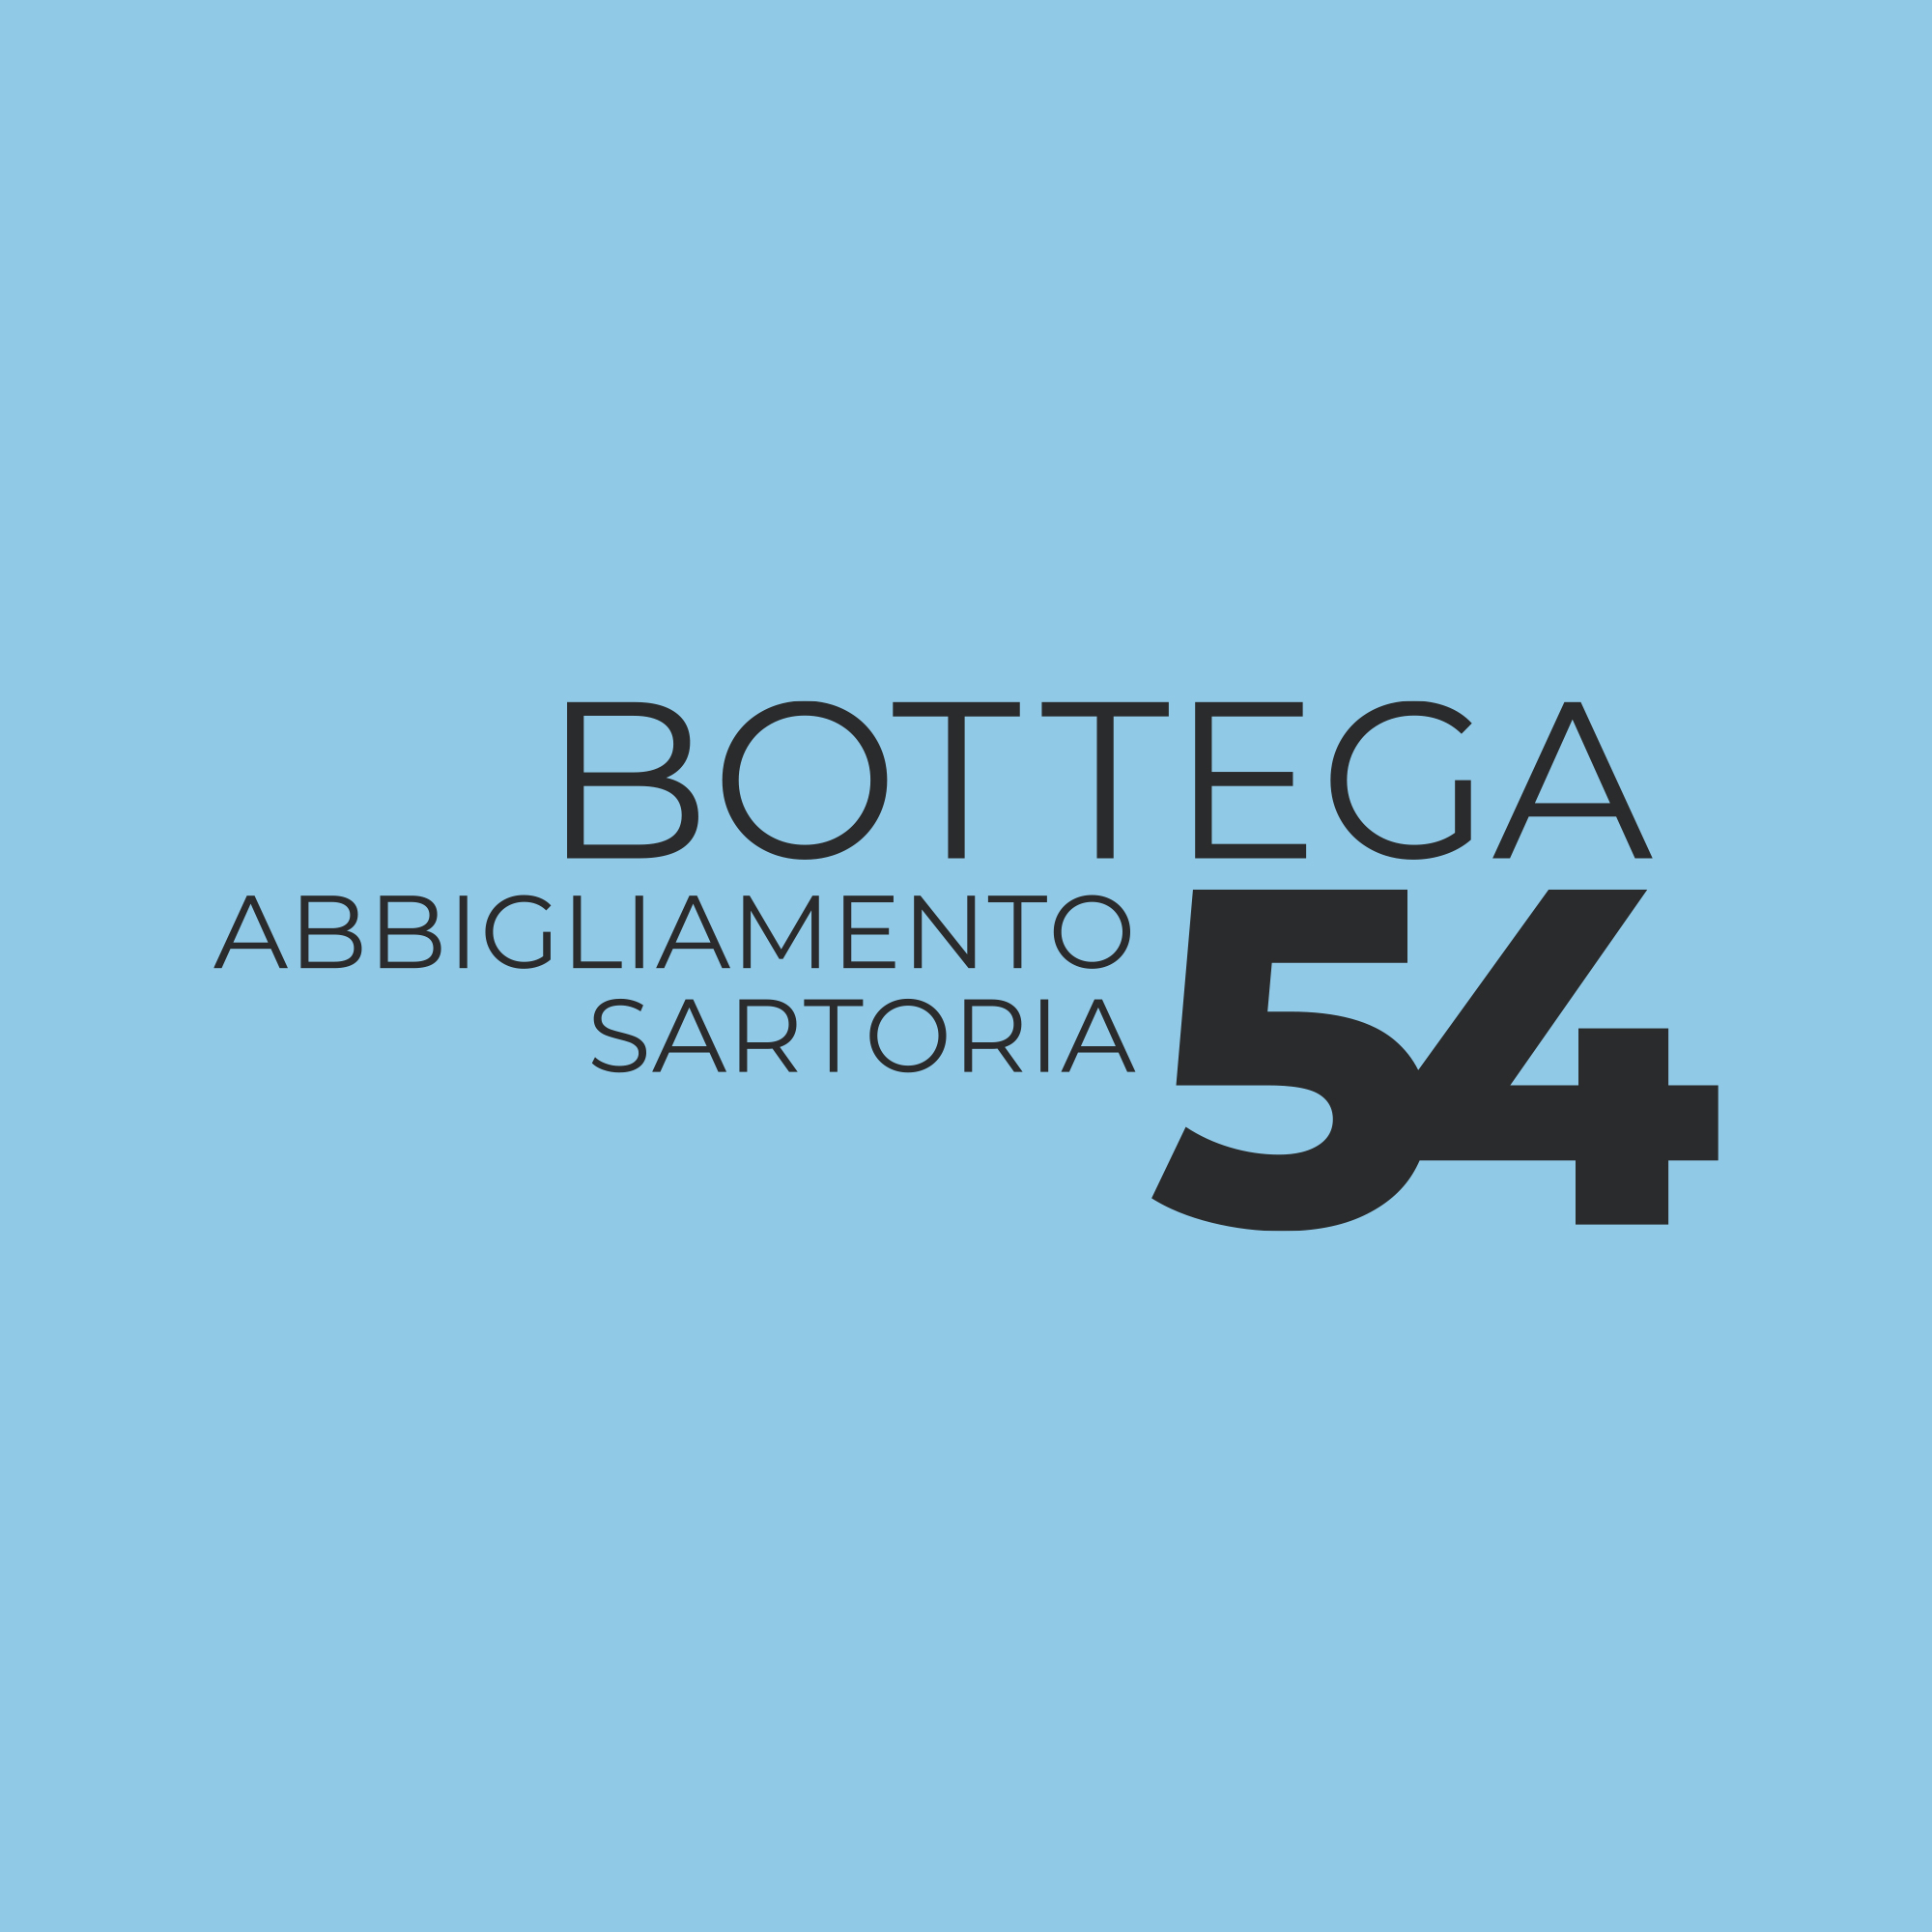 Bottega 54